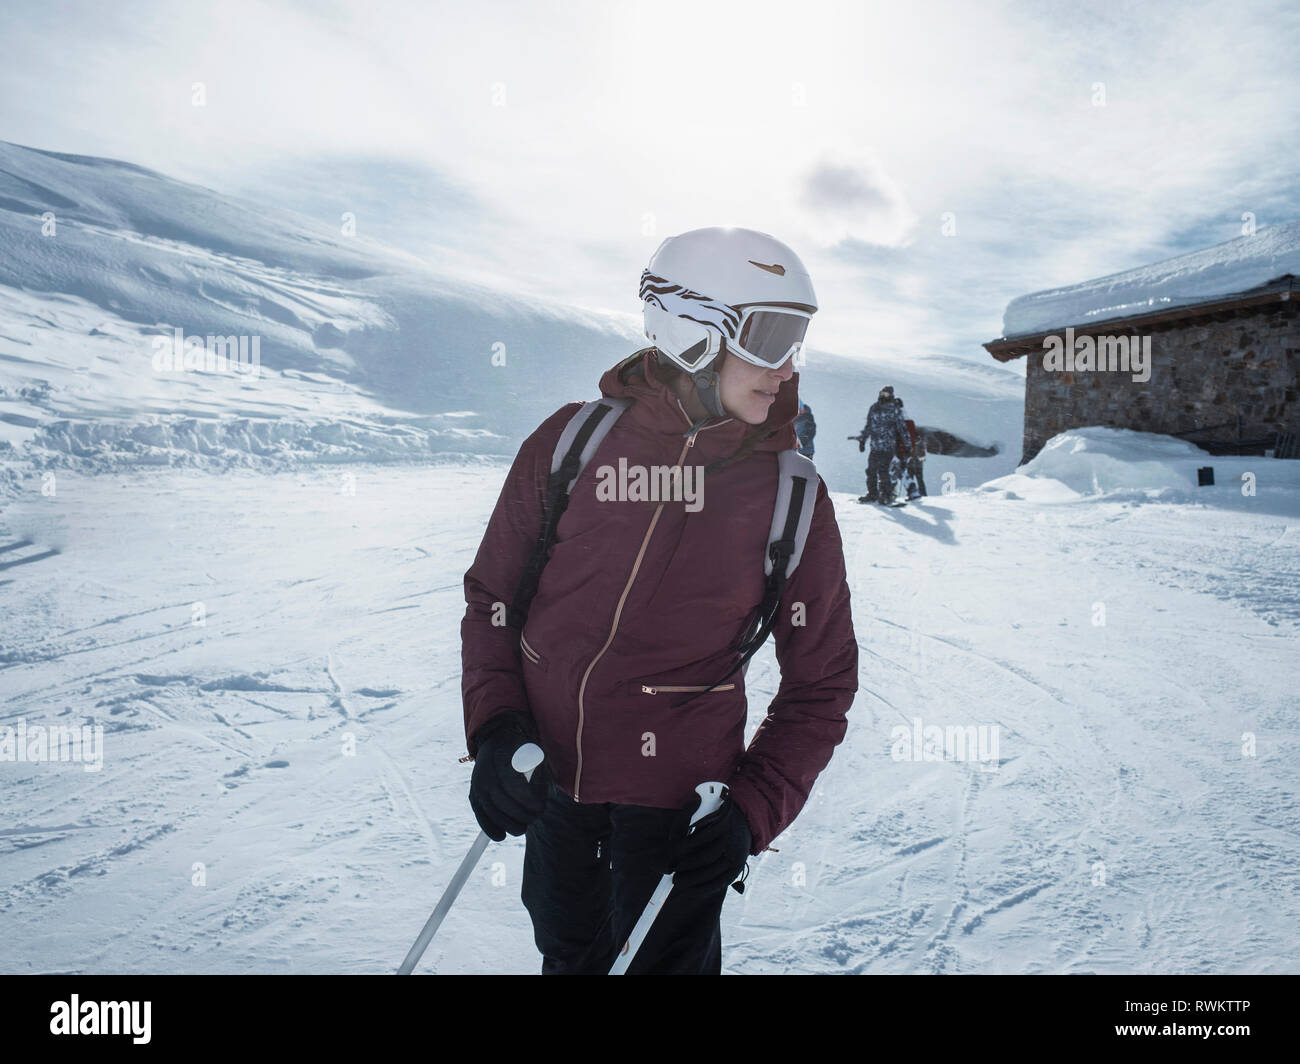 Junge weibliche Skifahrer das Tragen von Helm und Skibrille zurück in die verschneite Landschaft suchen, Alpe Ciamporino, Piemont, Italien Stockfoto